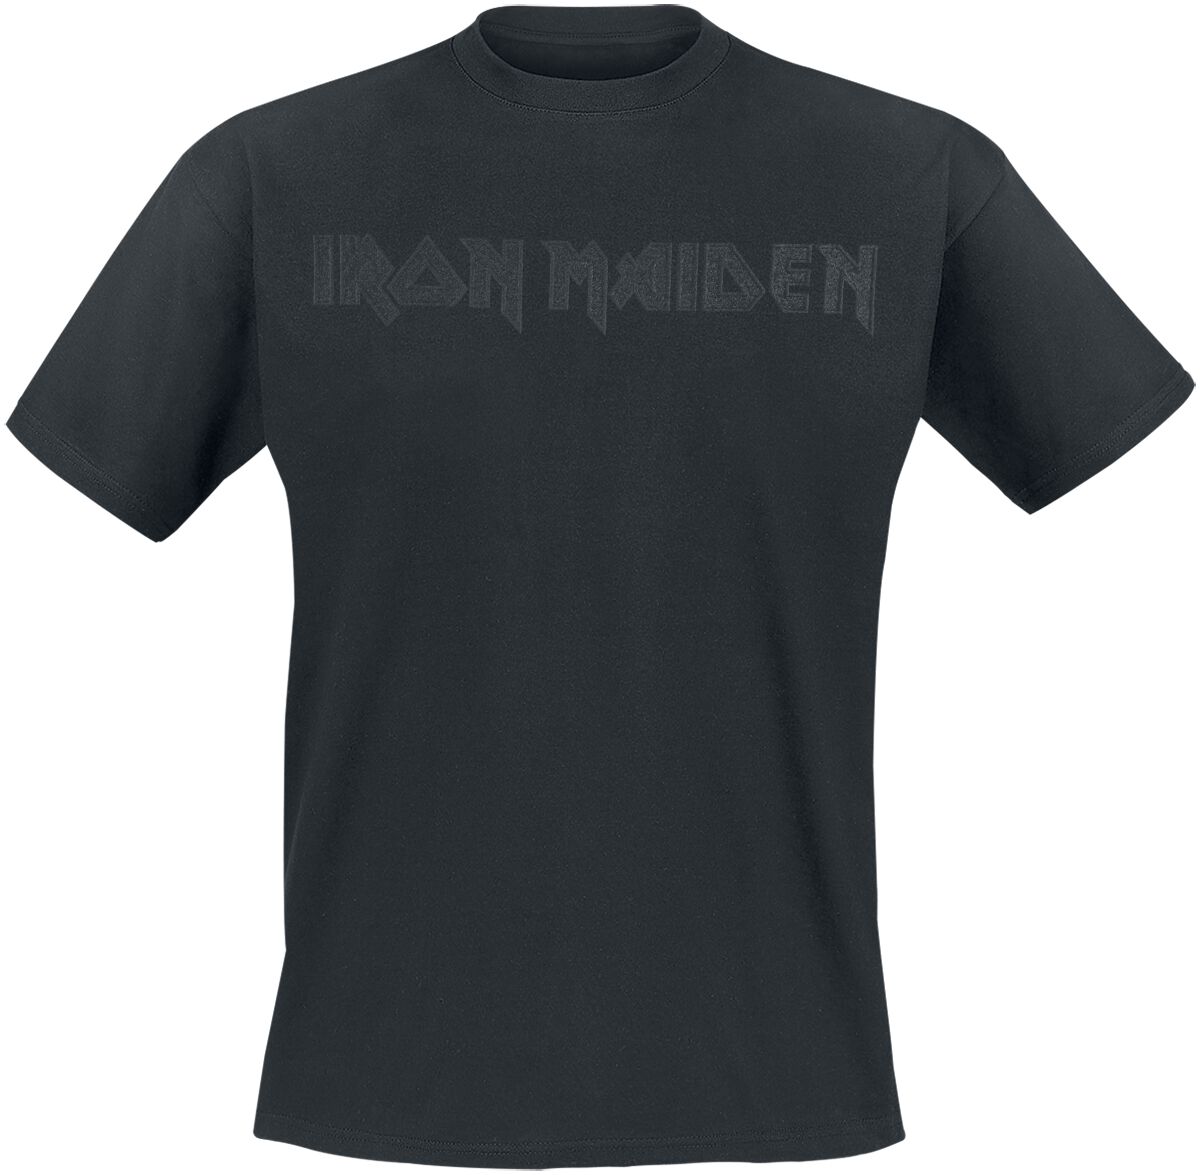 Iron Maiden T-Shirt - Black On Black Logo - S bis 4XL - für Männer - Größe L - schwarz  - Lizenziertes Merchandise!